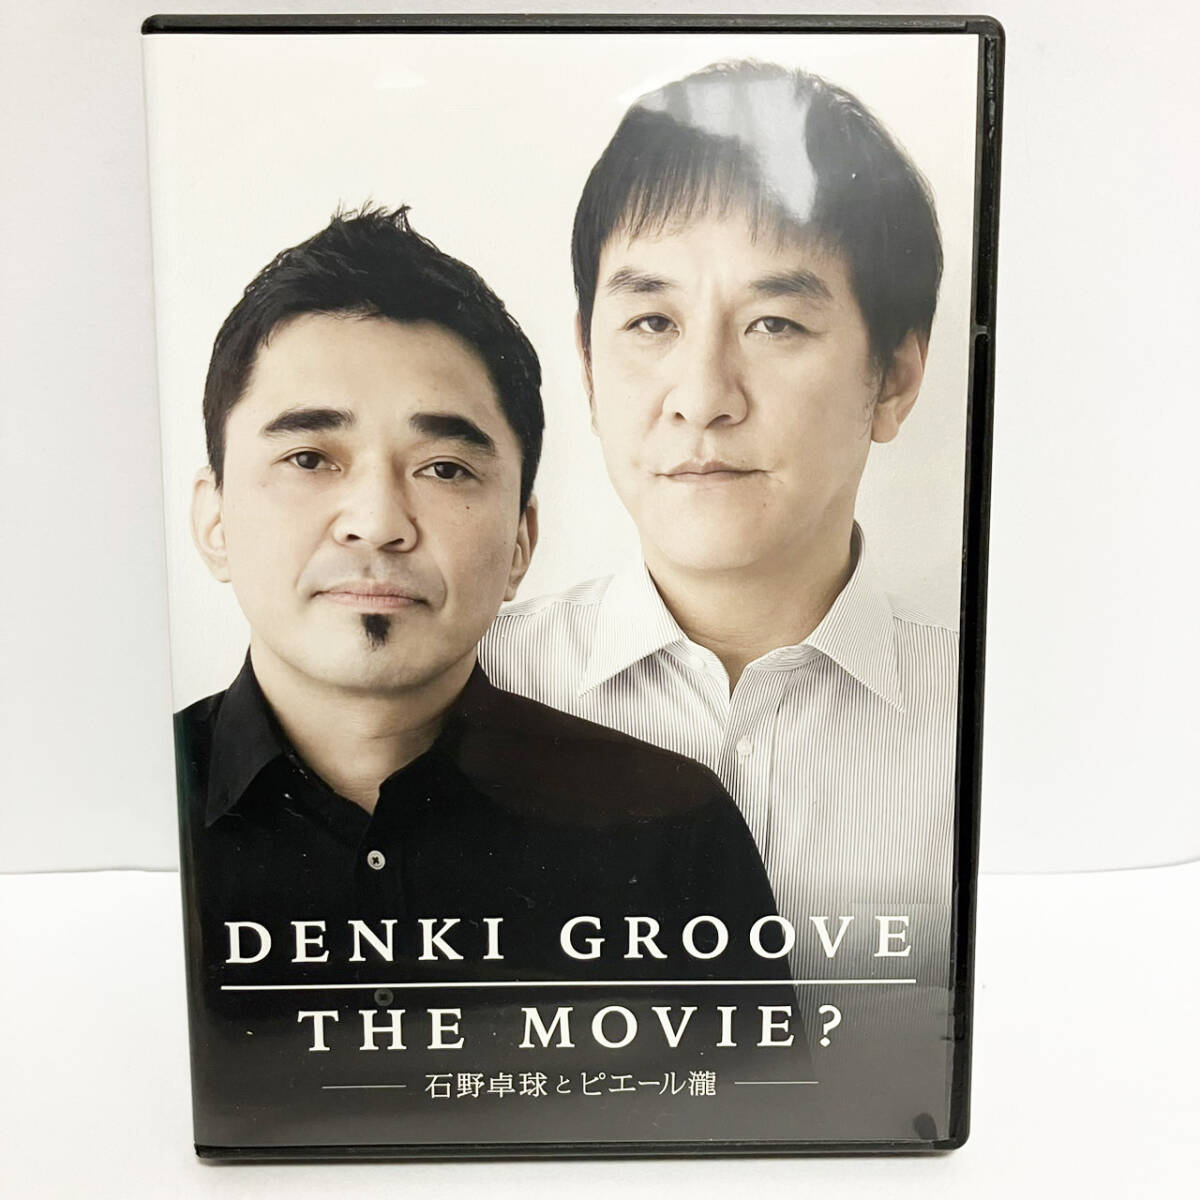 【送料無料】DENKI GROOVE THE MOVIE?～石野卓球とピエール瀧～ DVD【レンタル落ち】